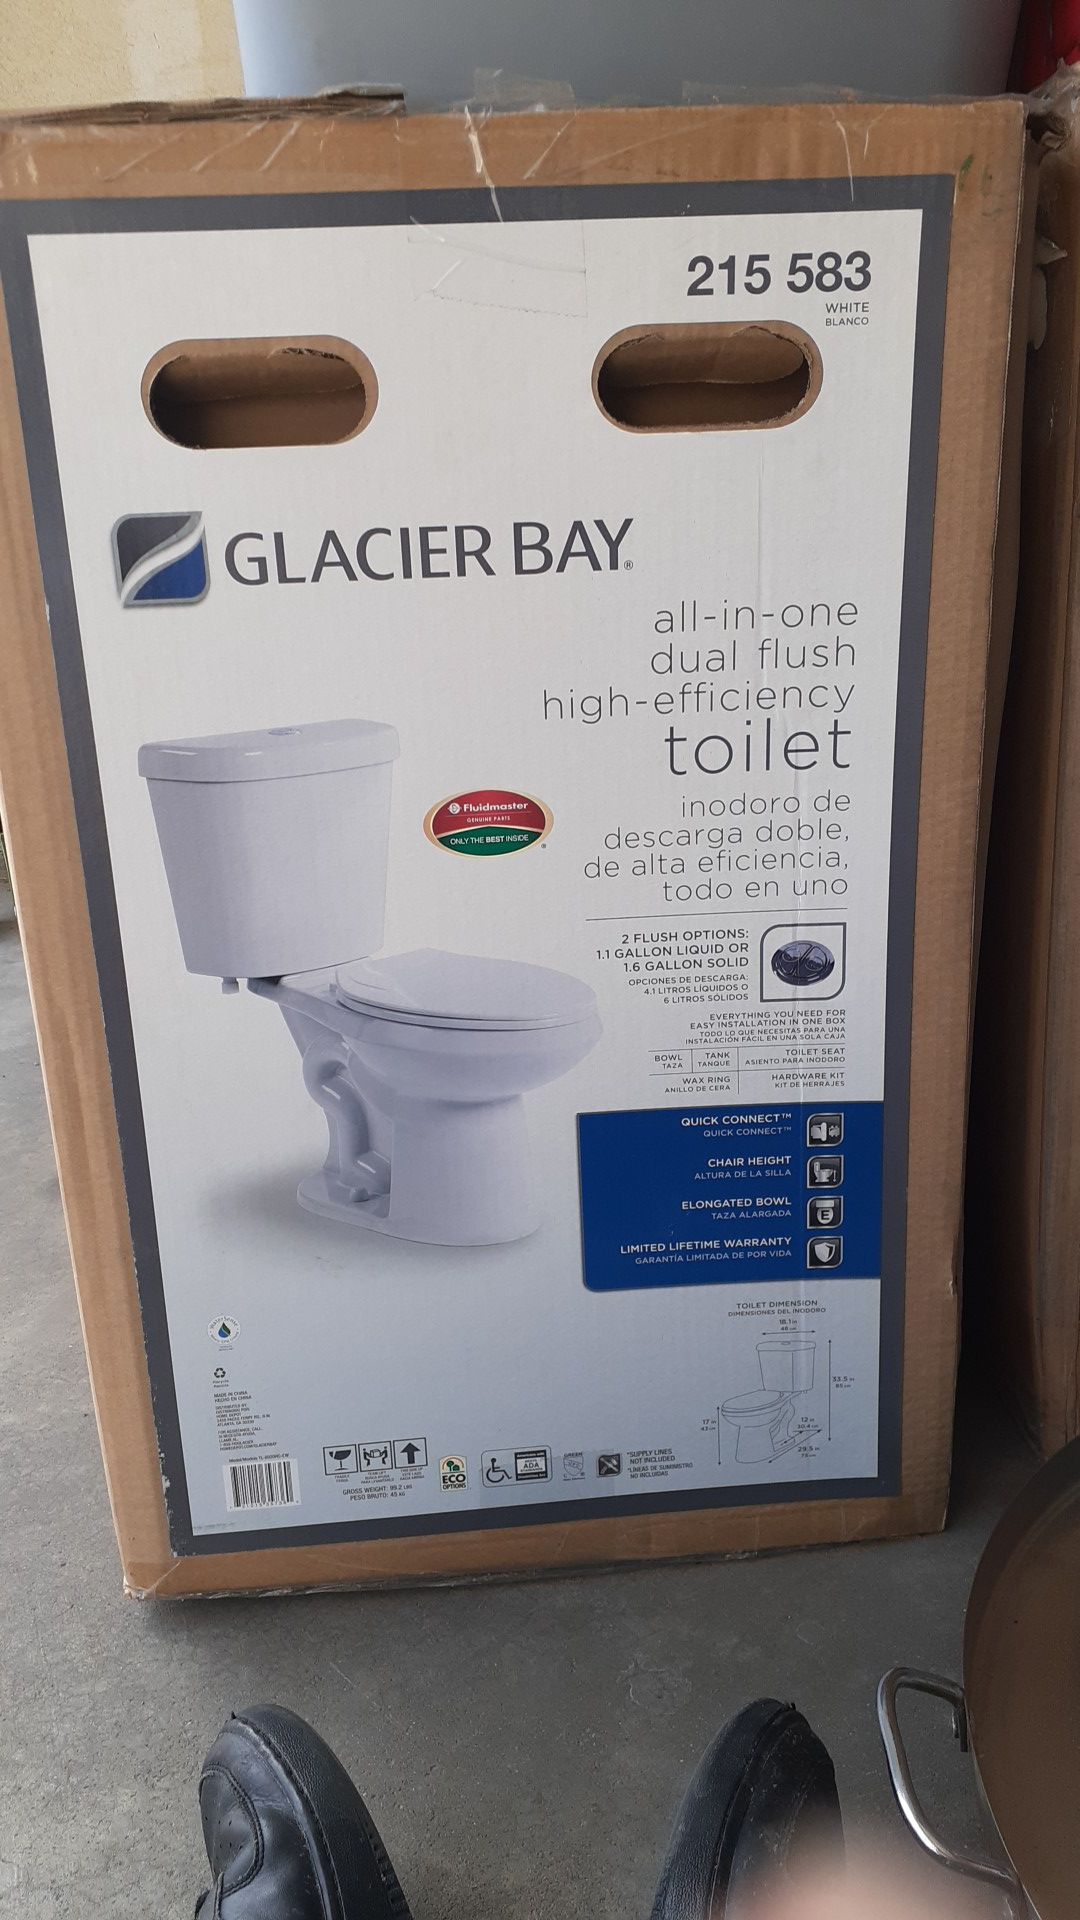 Glacier Bay Toilet